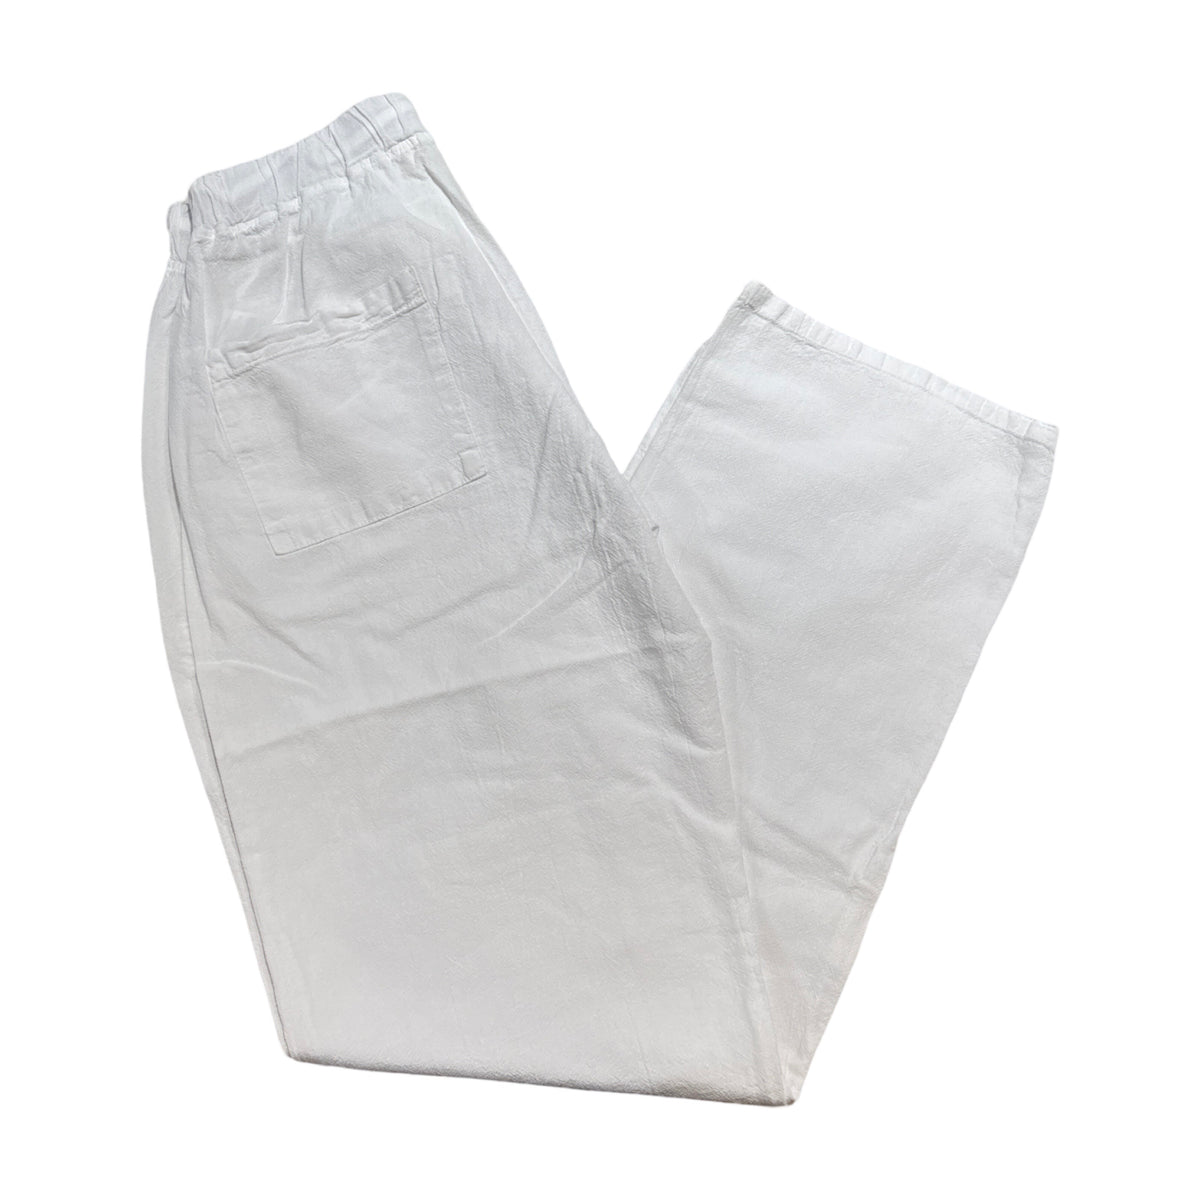 Seaspice White Double Pocket Peruvian Cotton Pants - Dudes Boutique